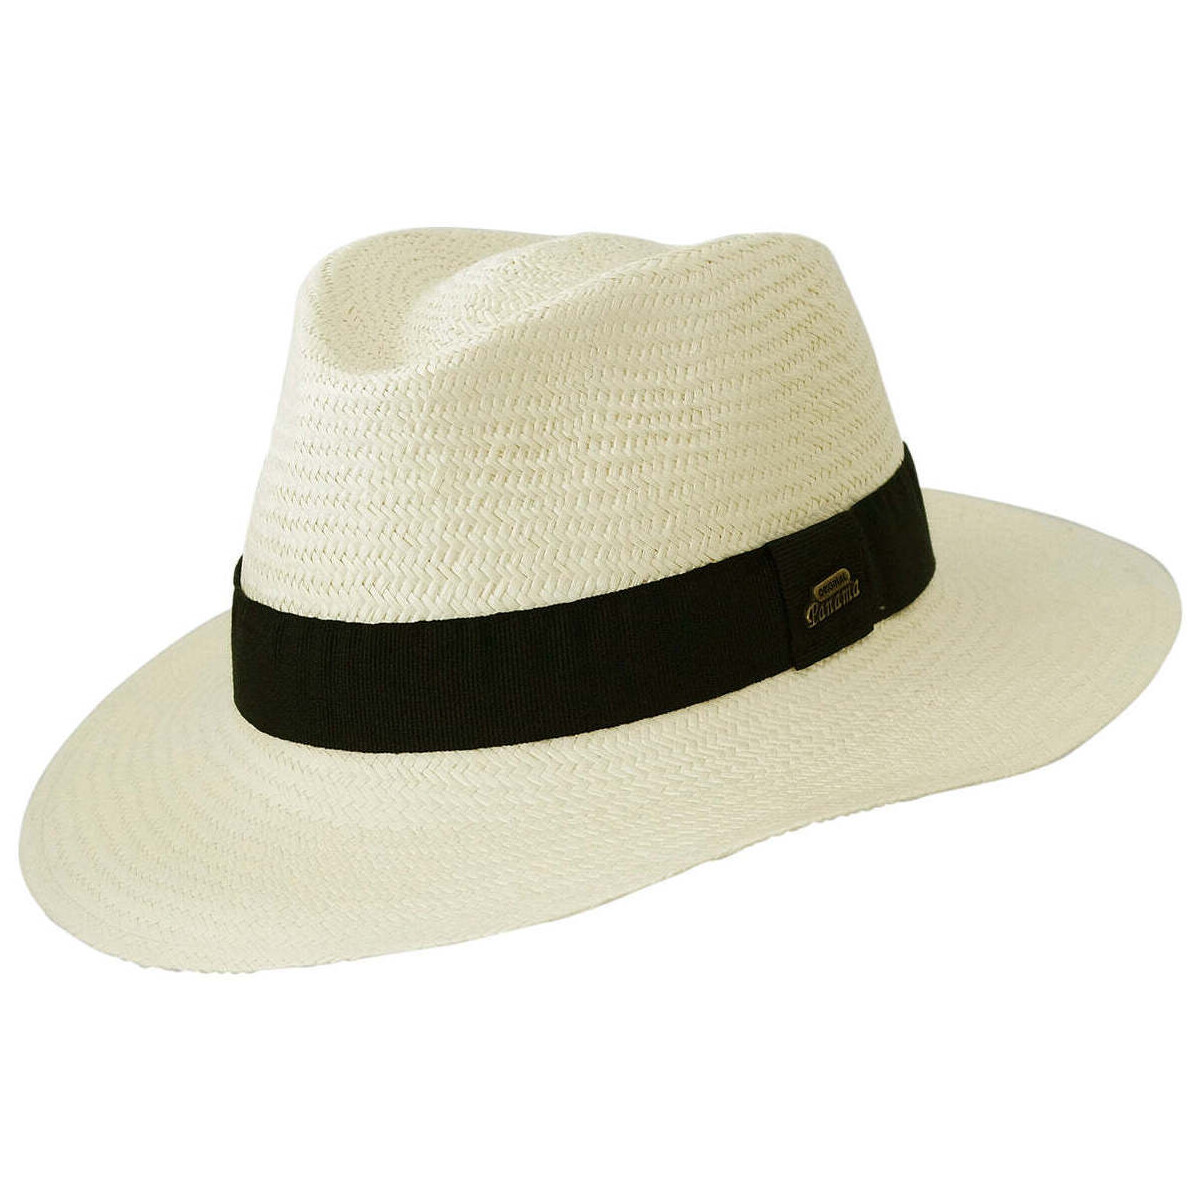 Accessoires textile Chapeaux Chapeau-Tendance Véritable chapeau panama naturel T56 Blanc